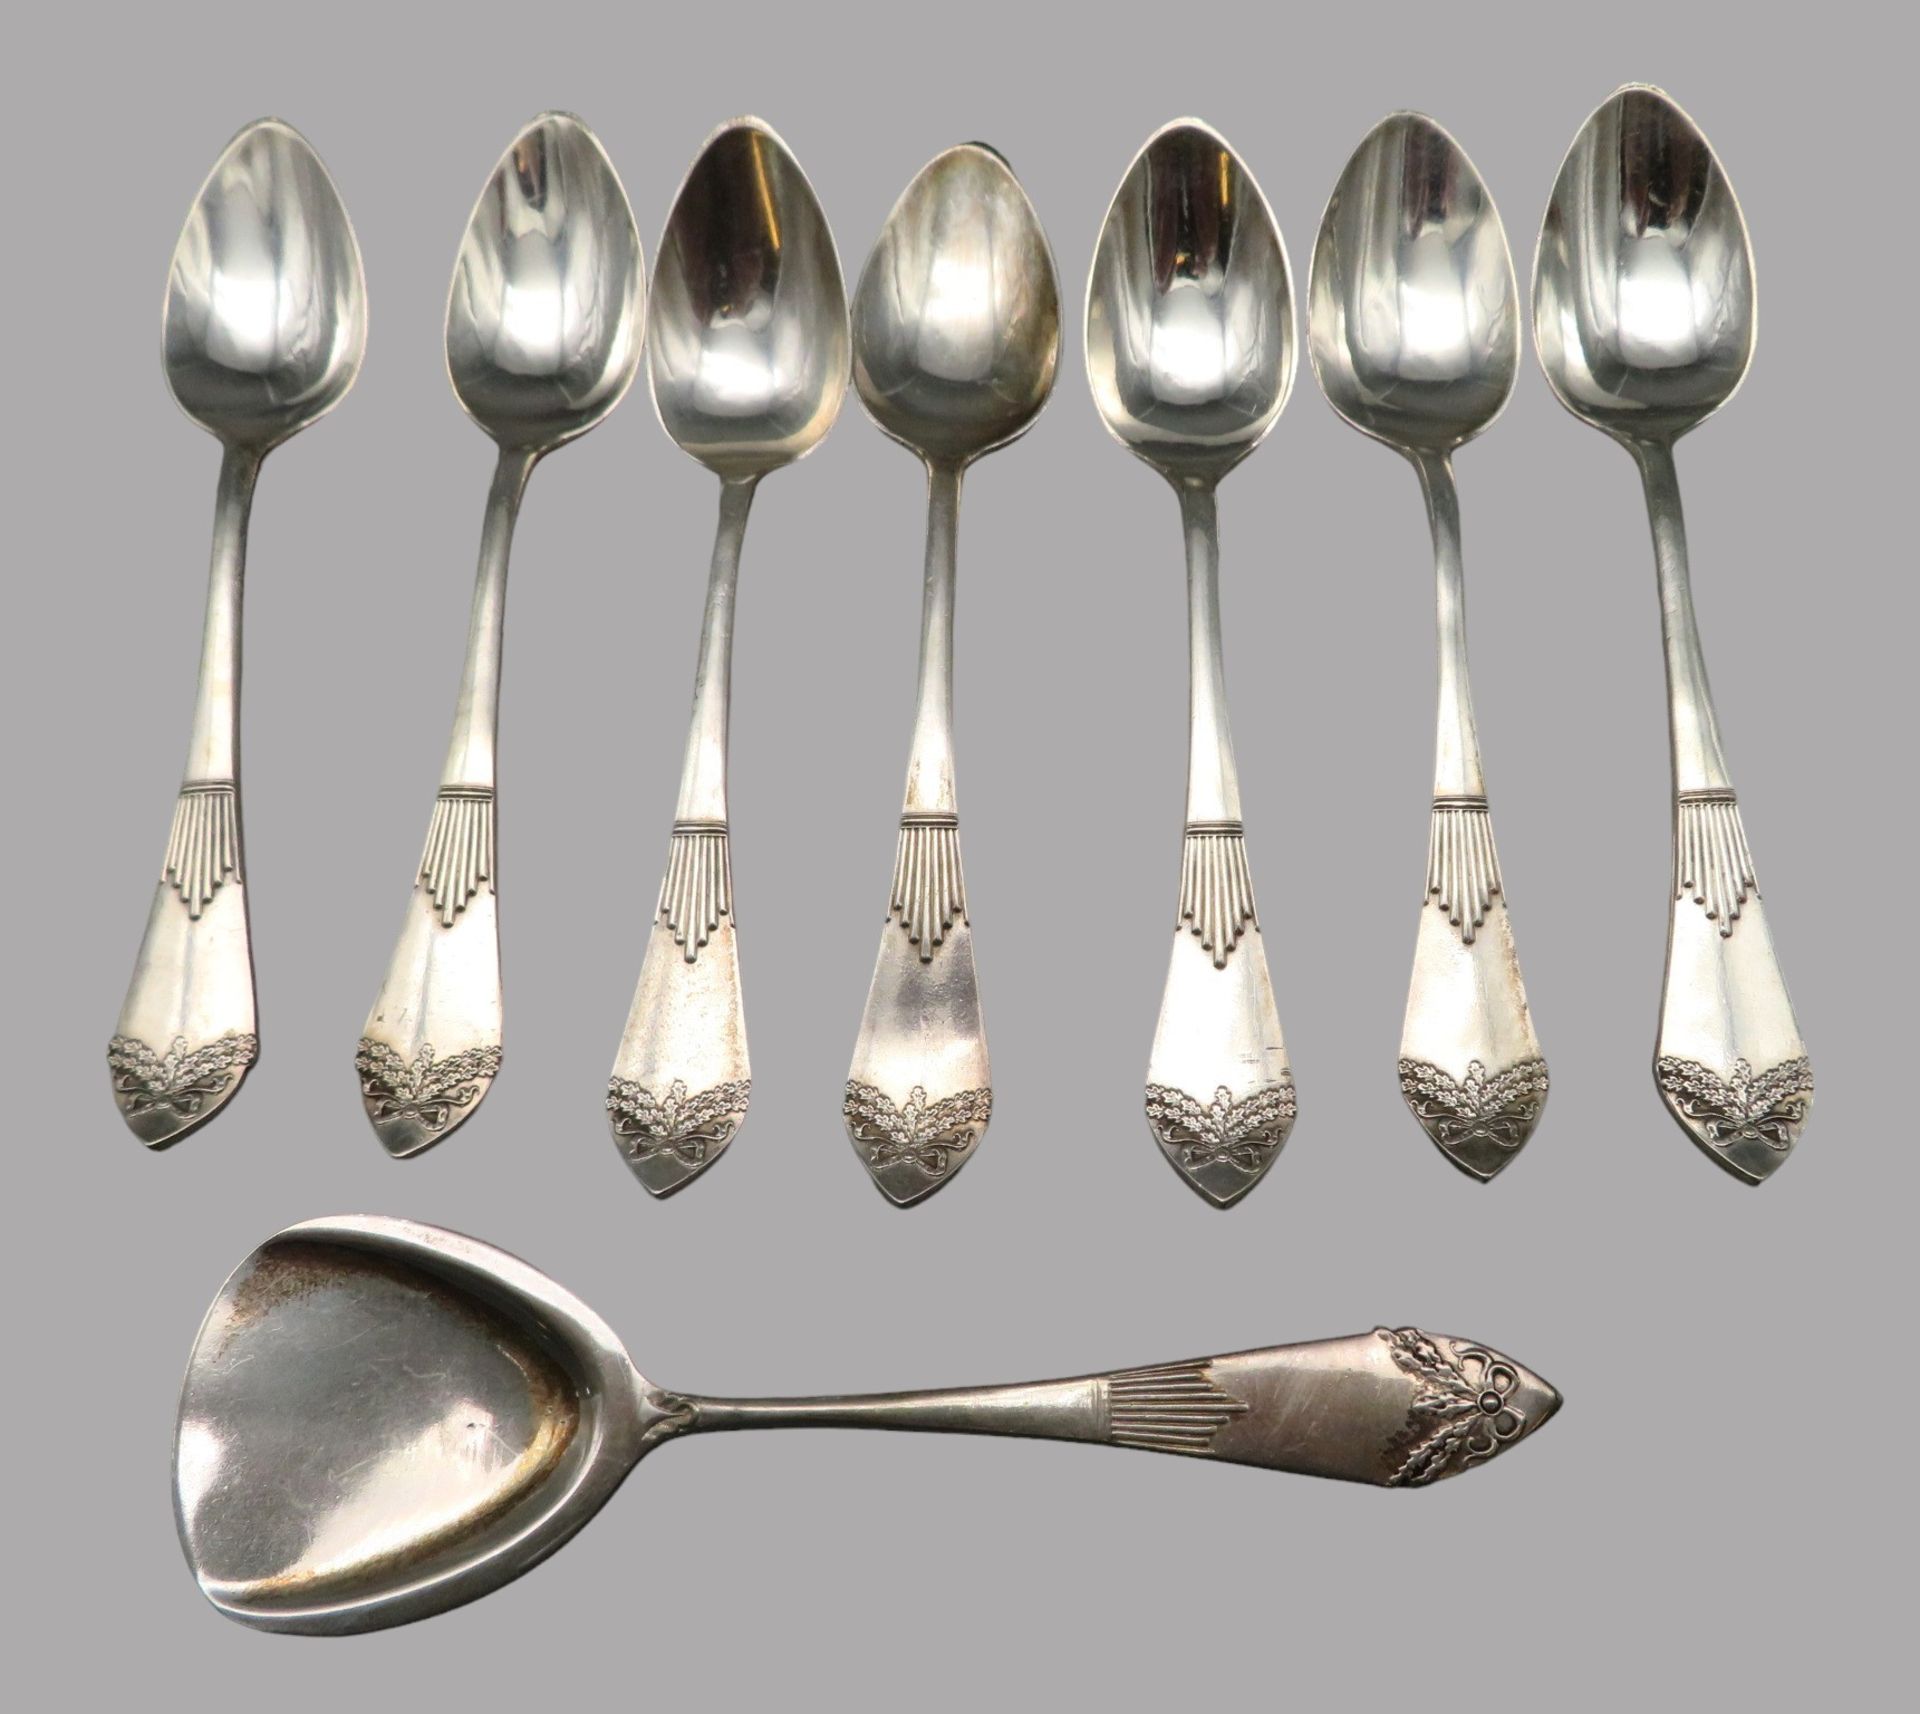 7 Teelöffeln und Teeschaufel, Silber 835/000, punziert, 87,4 g, spitz zulaufende Stielenden mit fei